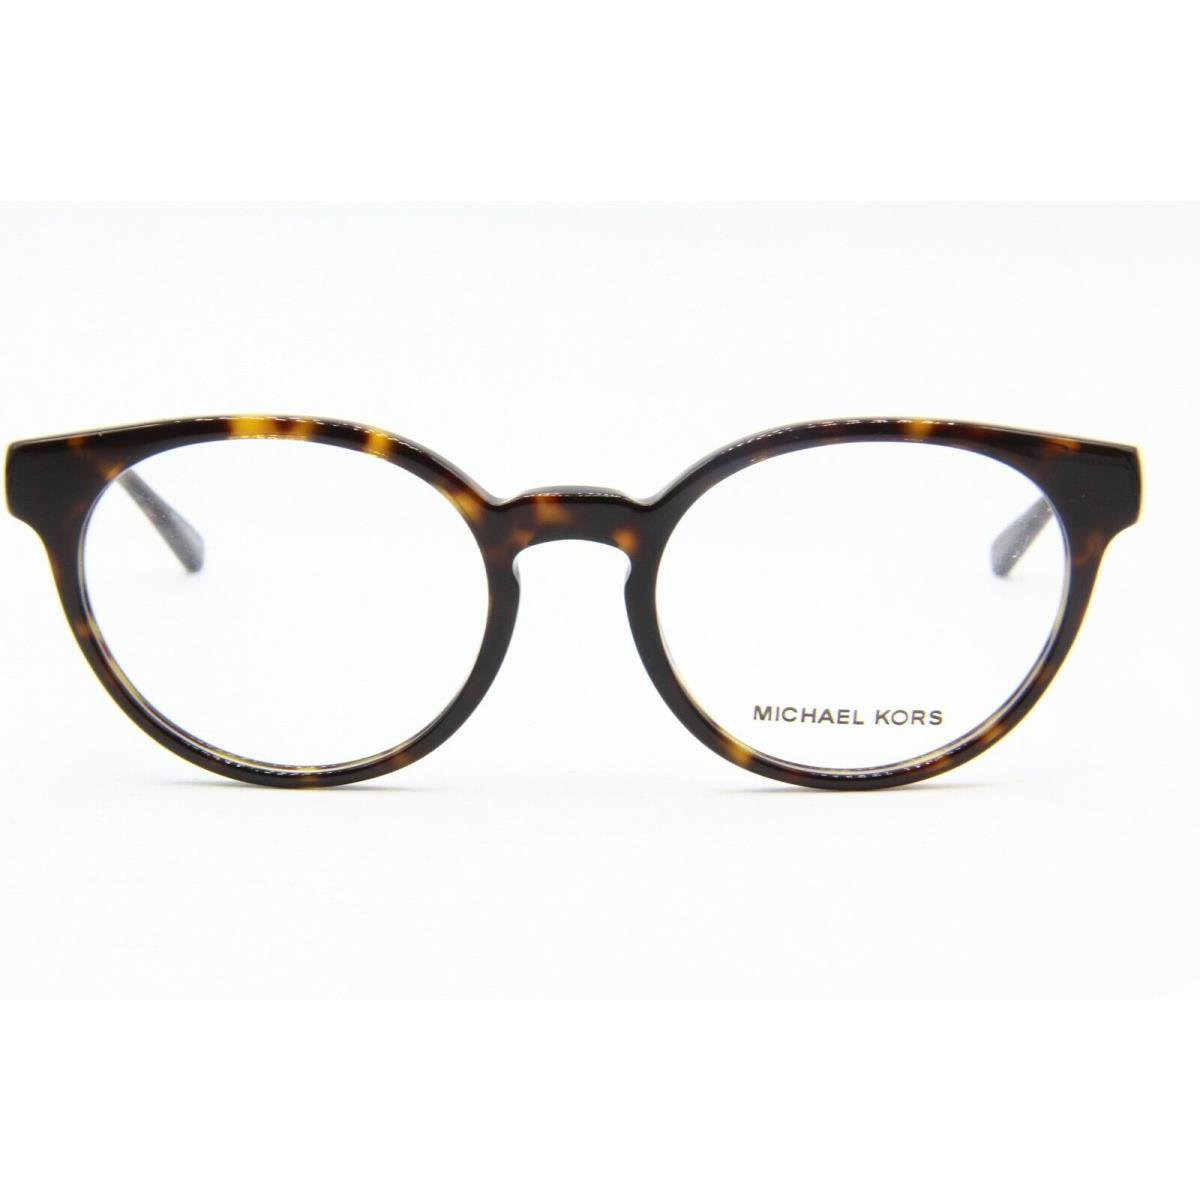 Michael Kors eyeglasses  - HAVANA Frame 0